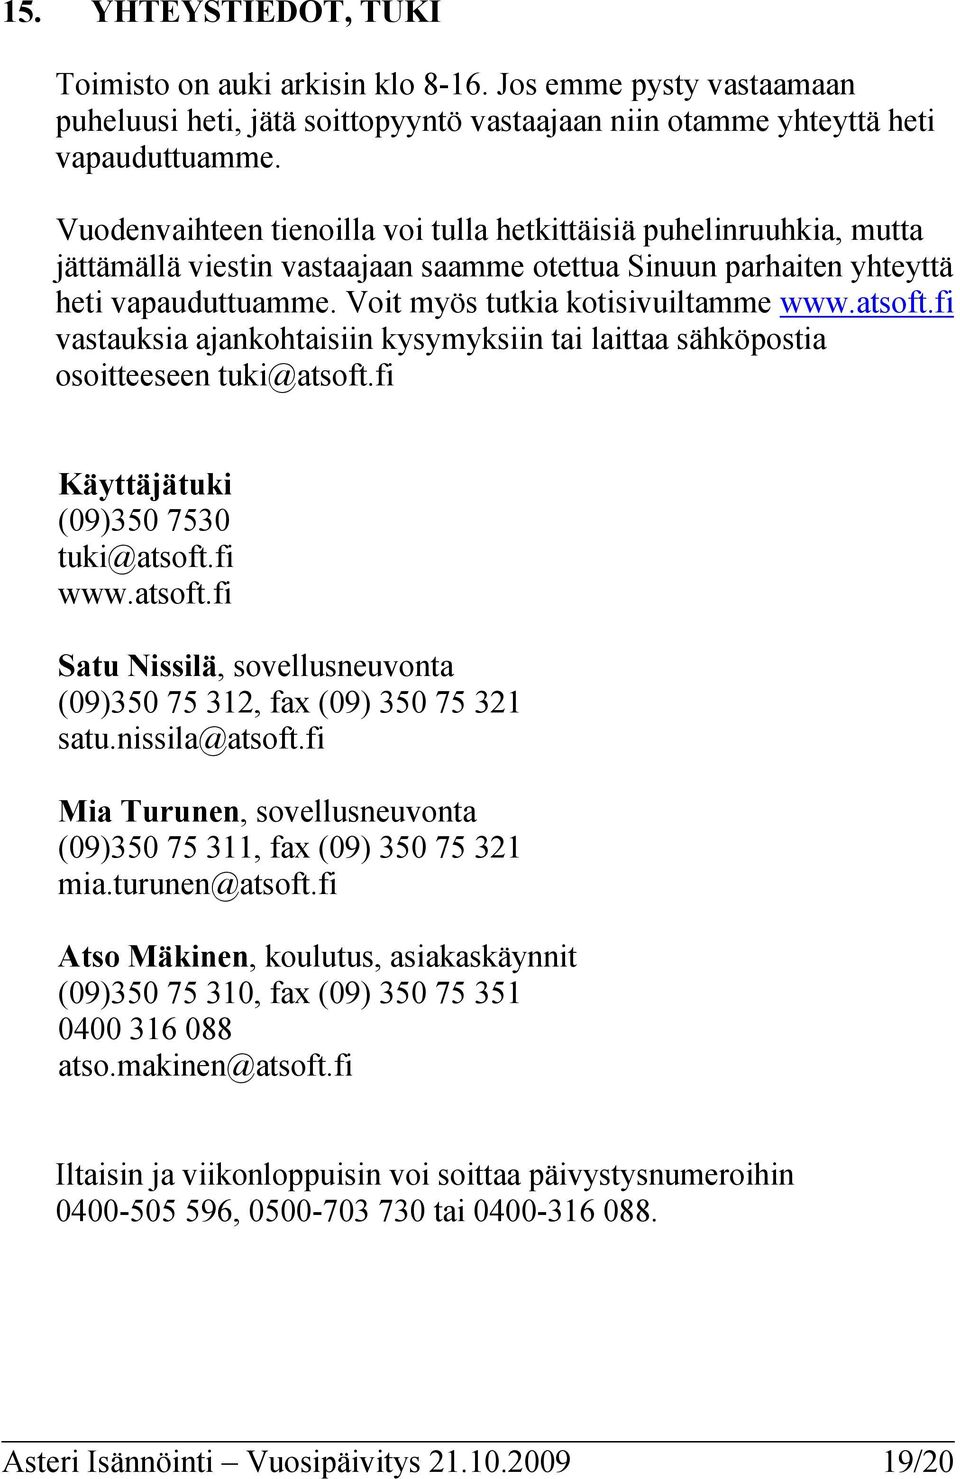 atsoft.fi vastauksia ajankohtaisiin kysymyksiin tai laittaa sähköpostia osoitteeseen tuki@atsoft.fi Käyttäjätuki (09)350 7530 tuki@atsoft.fi www.atsoft.fi Satu Nissilä, sovellusneuvonta (09)350 75 312, fax (09) 350 75 321 satu.